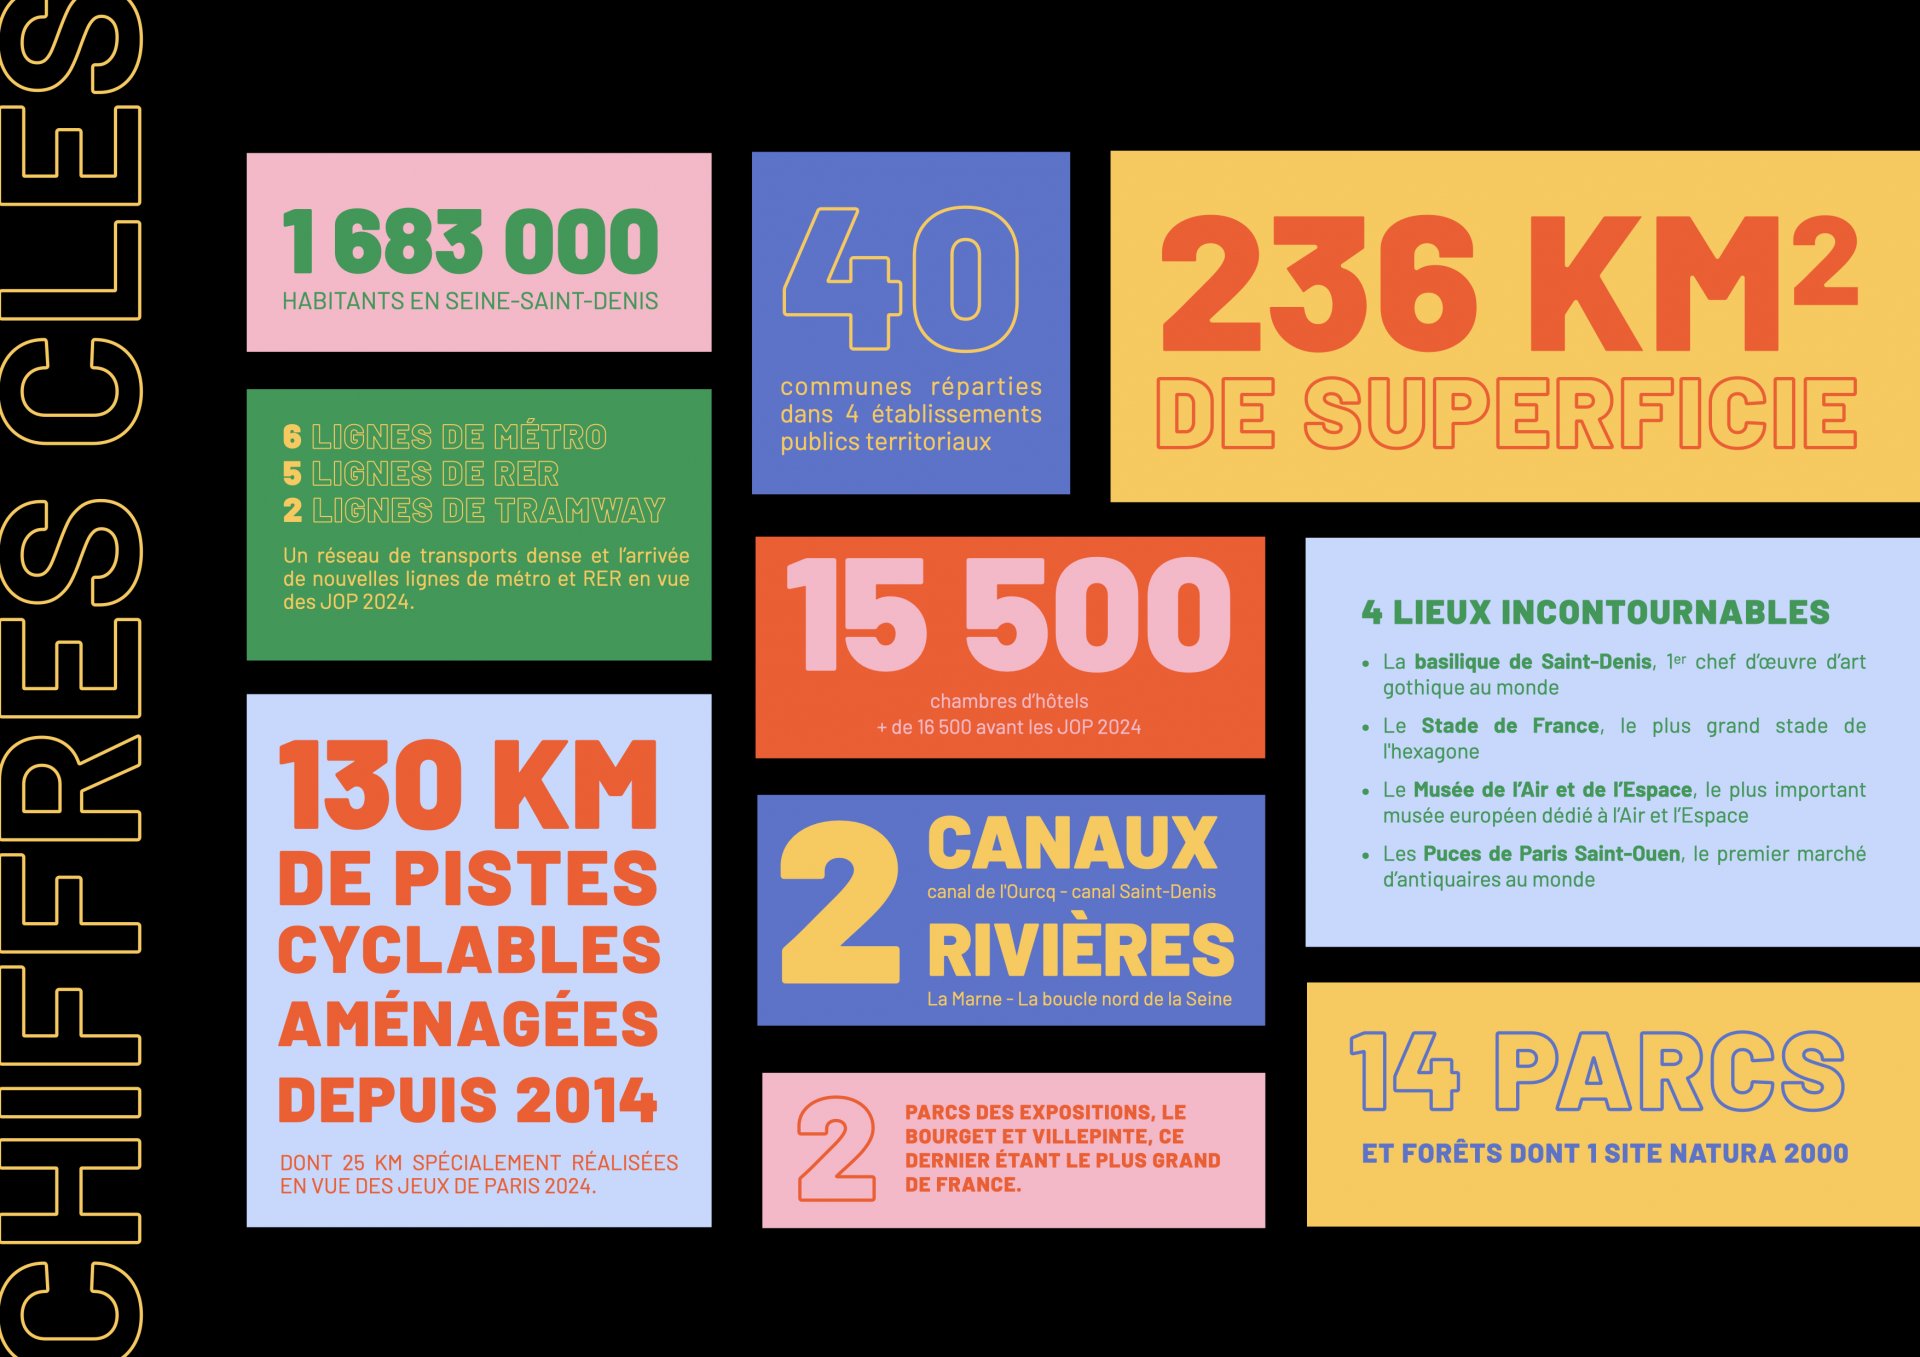 Sites touristiques de Seine Saint Denis, les chiffres clés sur ce département